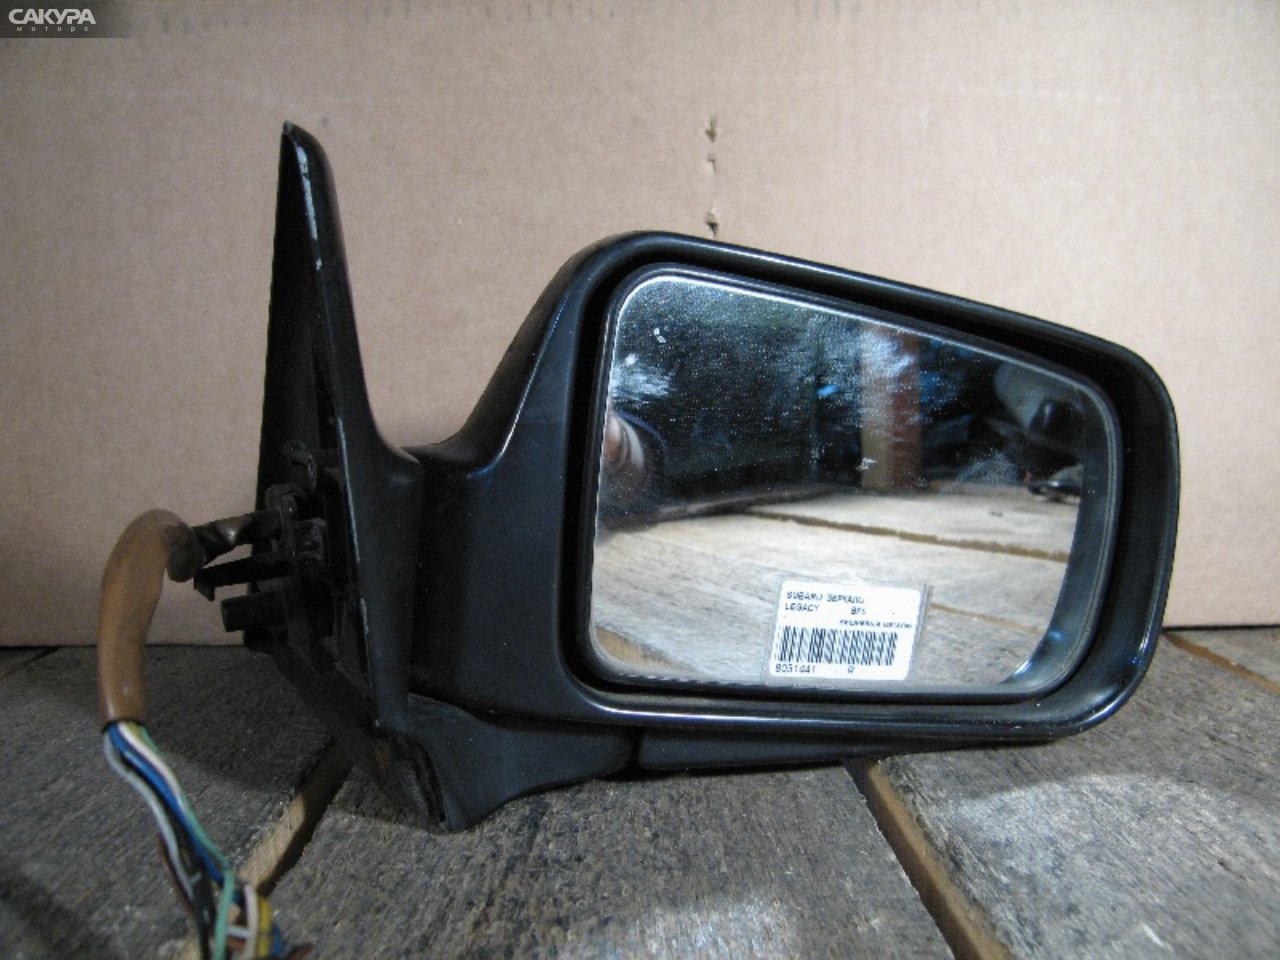 Зеркало боковое правое Subaru Legacy BF5: купить в Сакура Абакан.